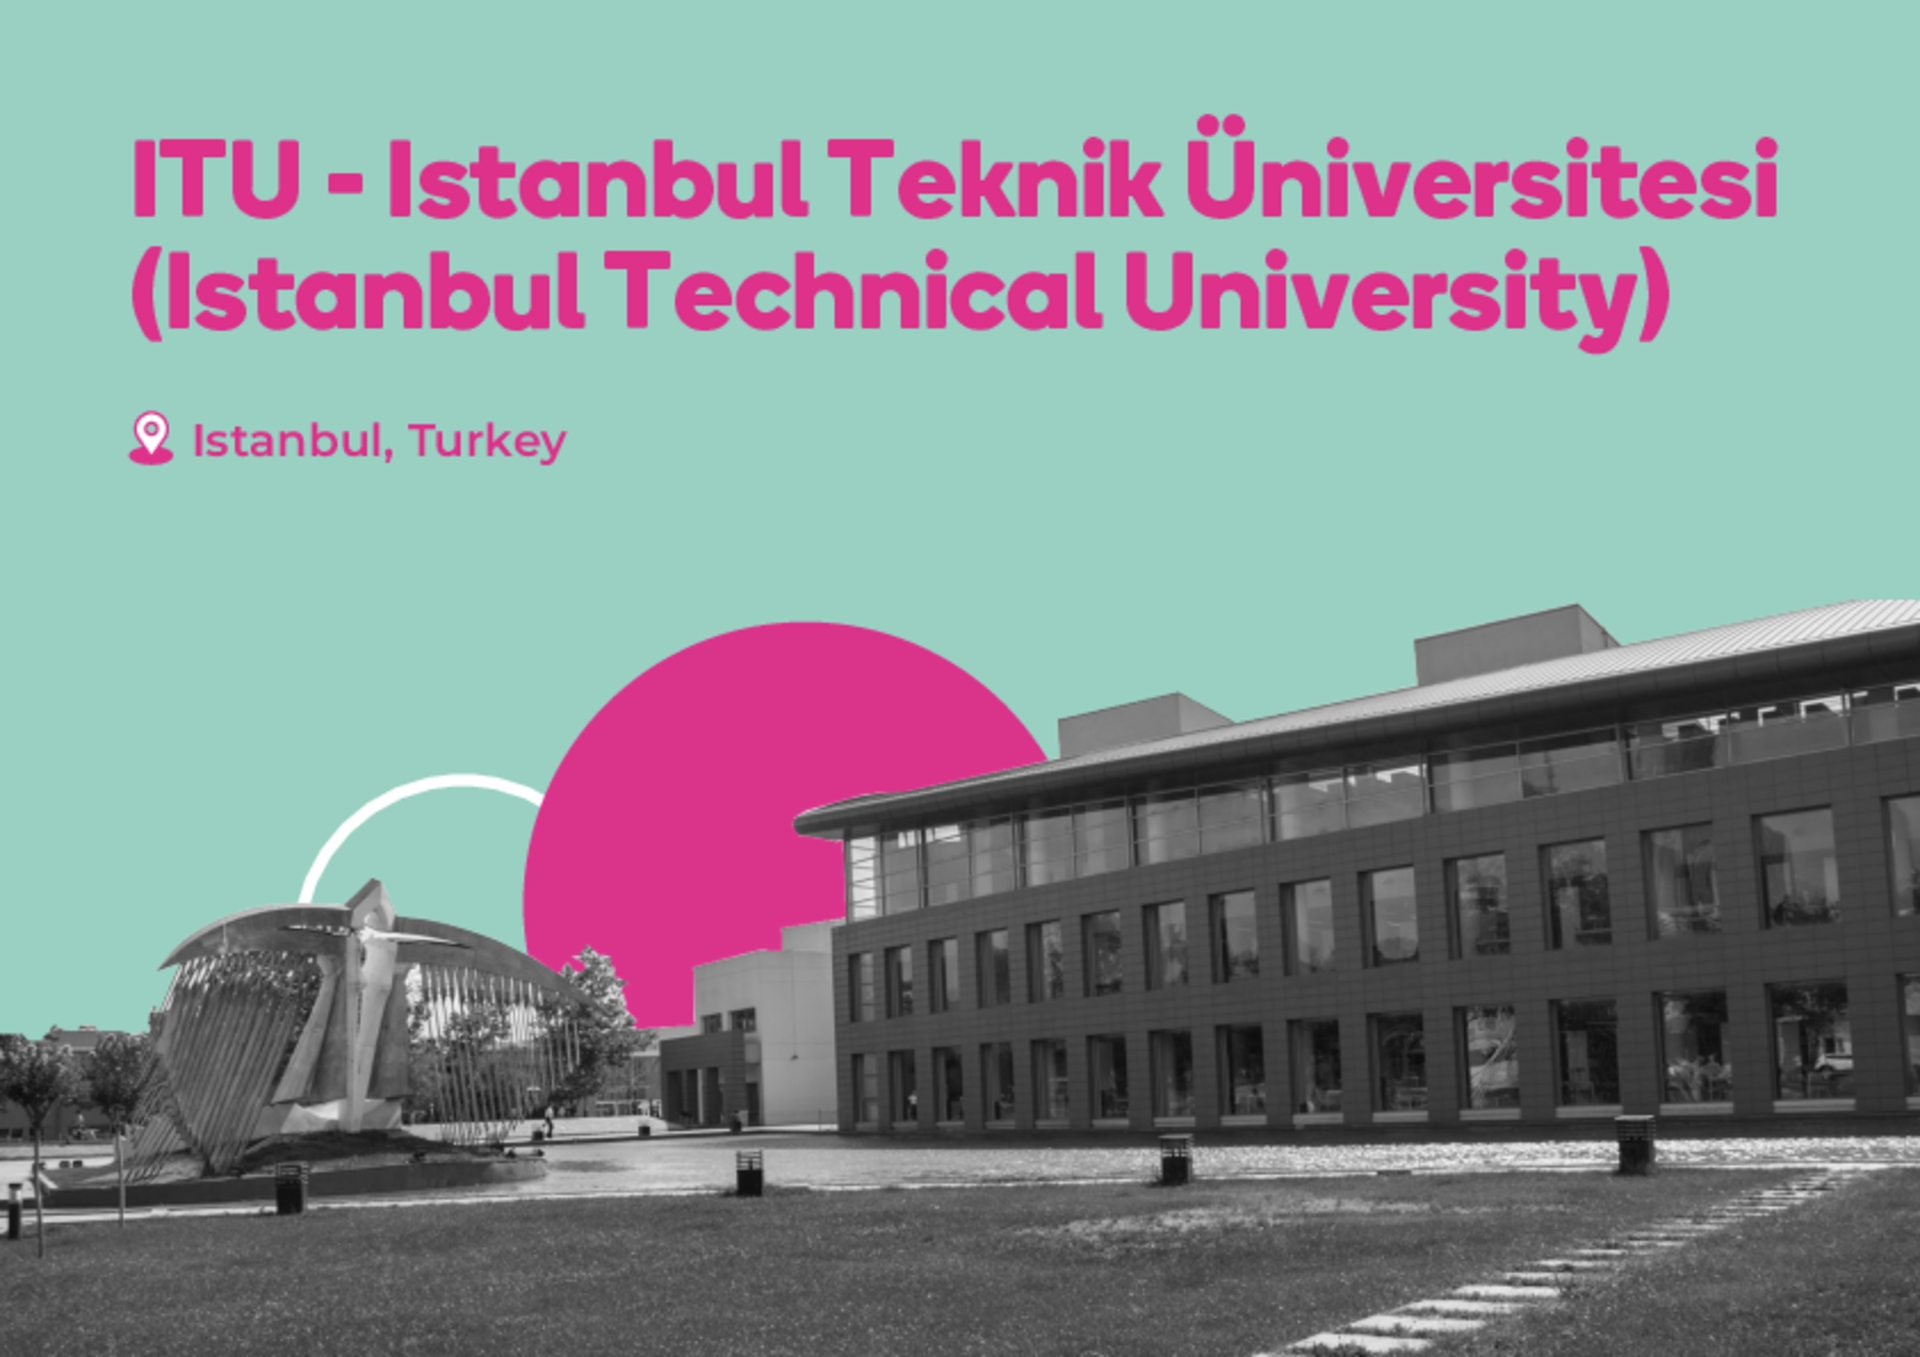 ISTANBU04_ITU_istanbul